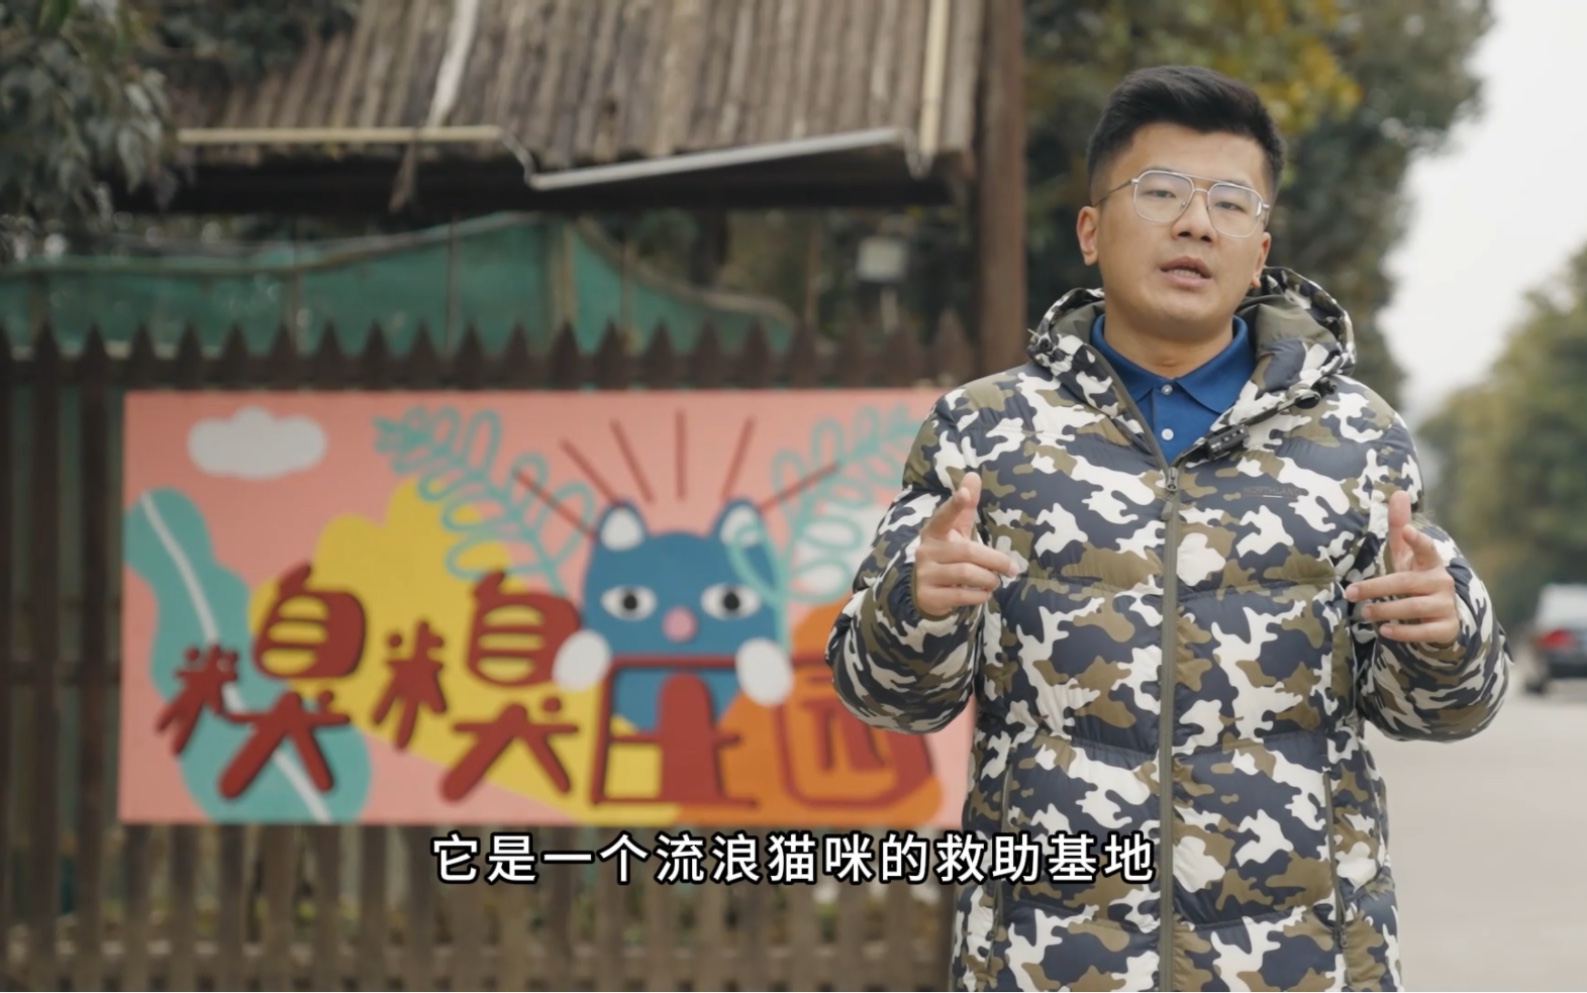 江苏台记者小哥哥镜头下的糗糗庄园。糗糗庄园是属于流浪猫猫的桃花源。以红山动物园为榜样，以猫猫为本，给它们提供安全，自然，舒适的生活环境。